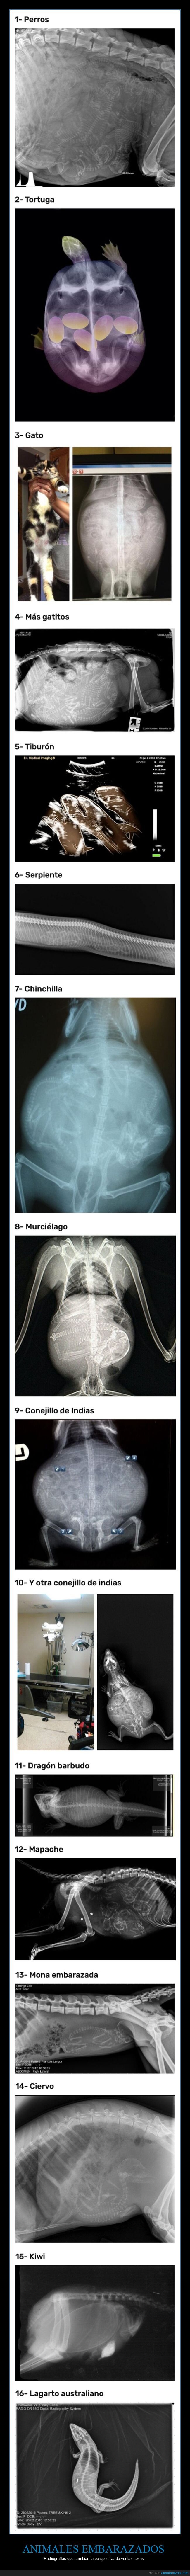 animales,embarazados,radiografías